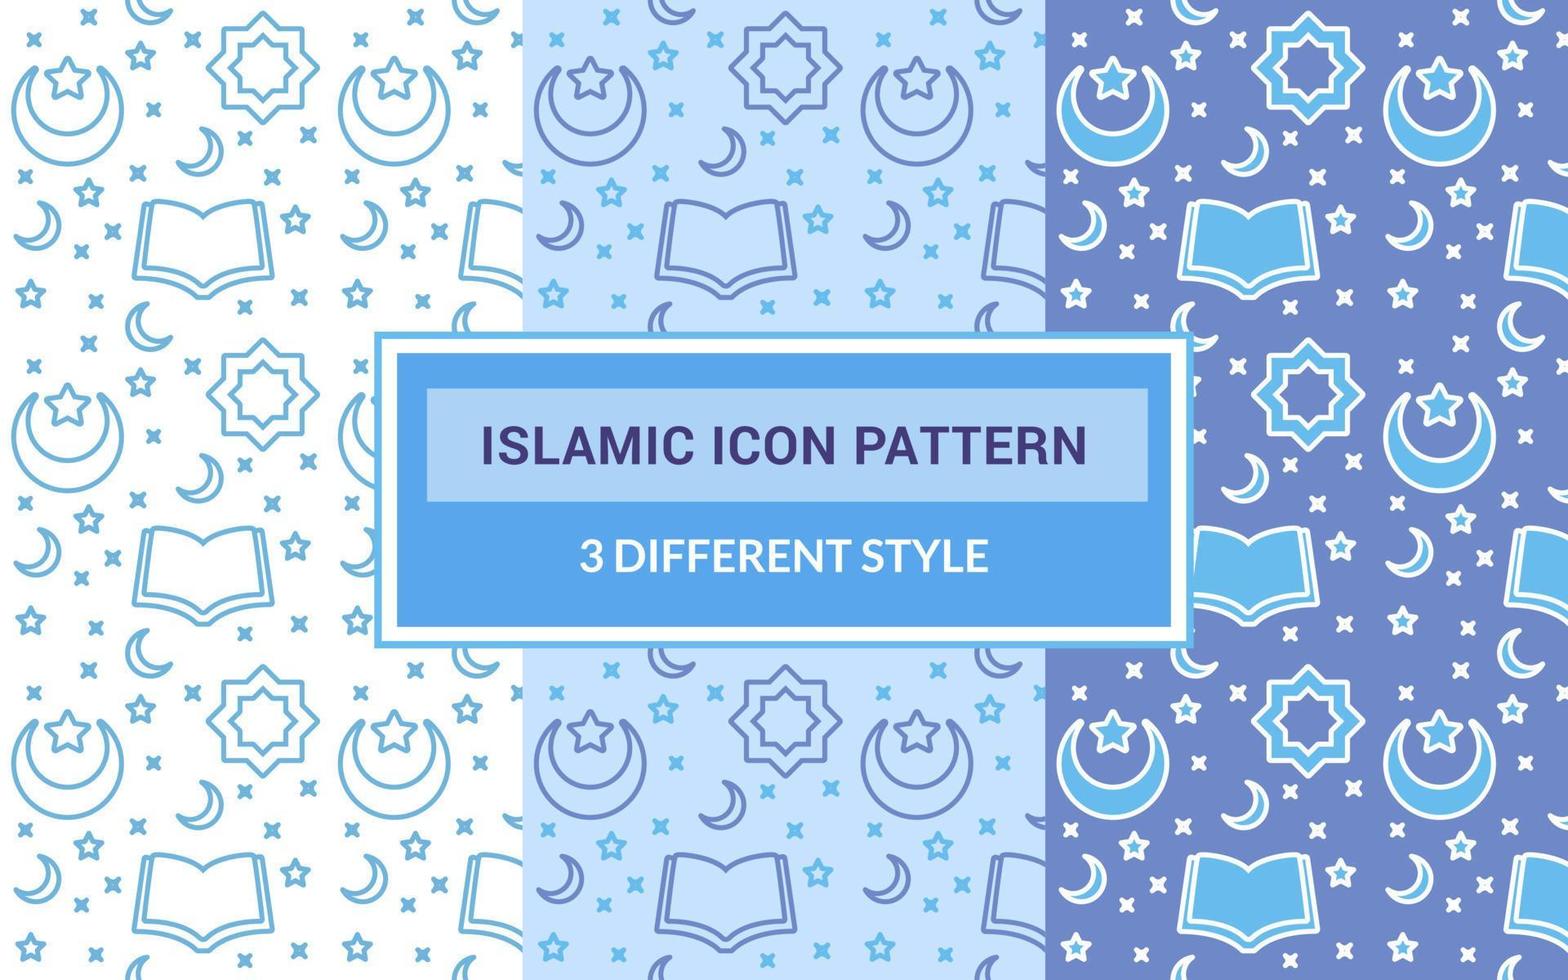 icono islámico patrón corán libro abierto luna creciente estrella adorno árabe con versión agrupada tres diseño plano de estilo de tema azul diferente. vector